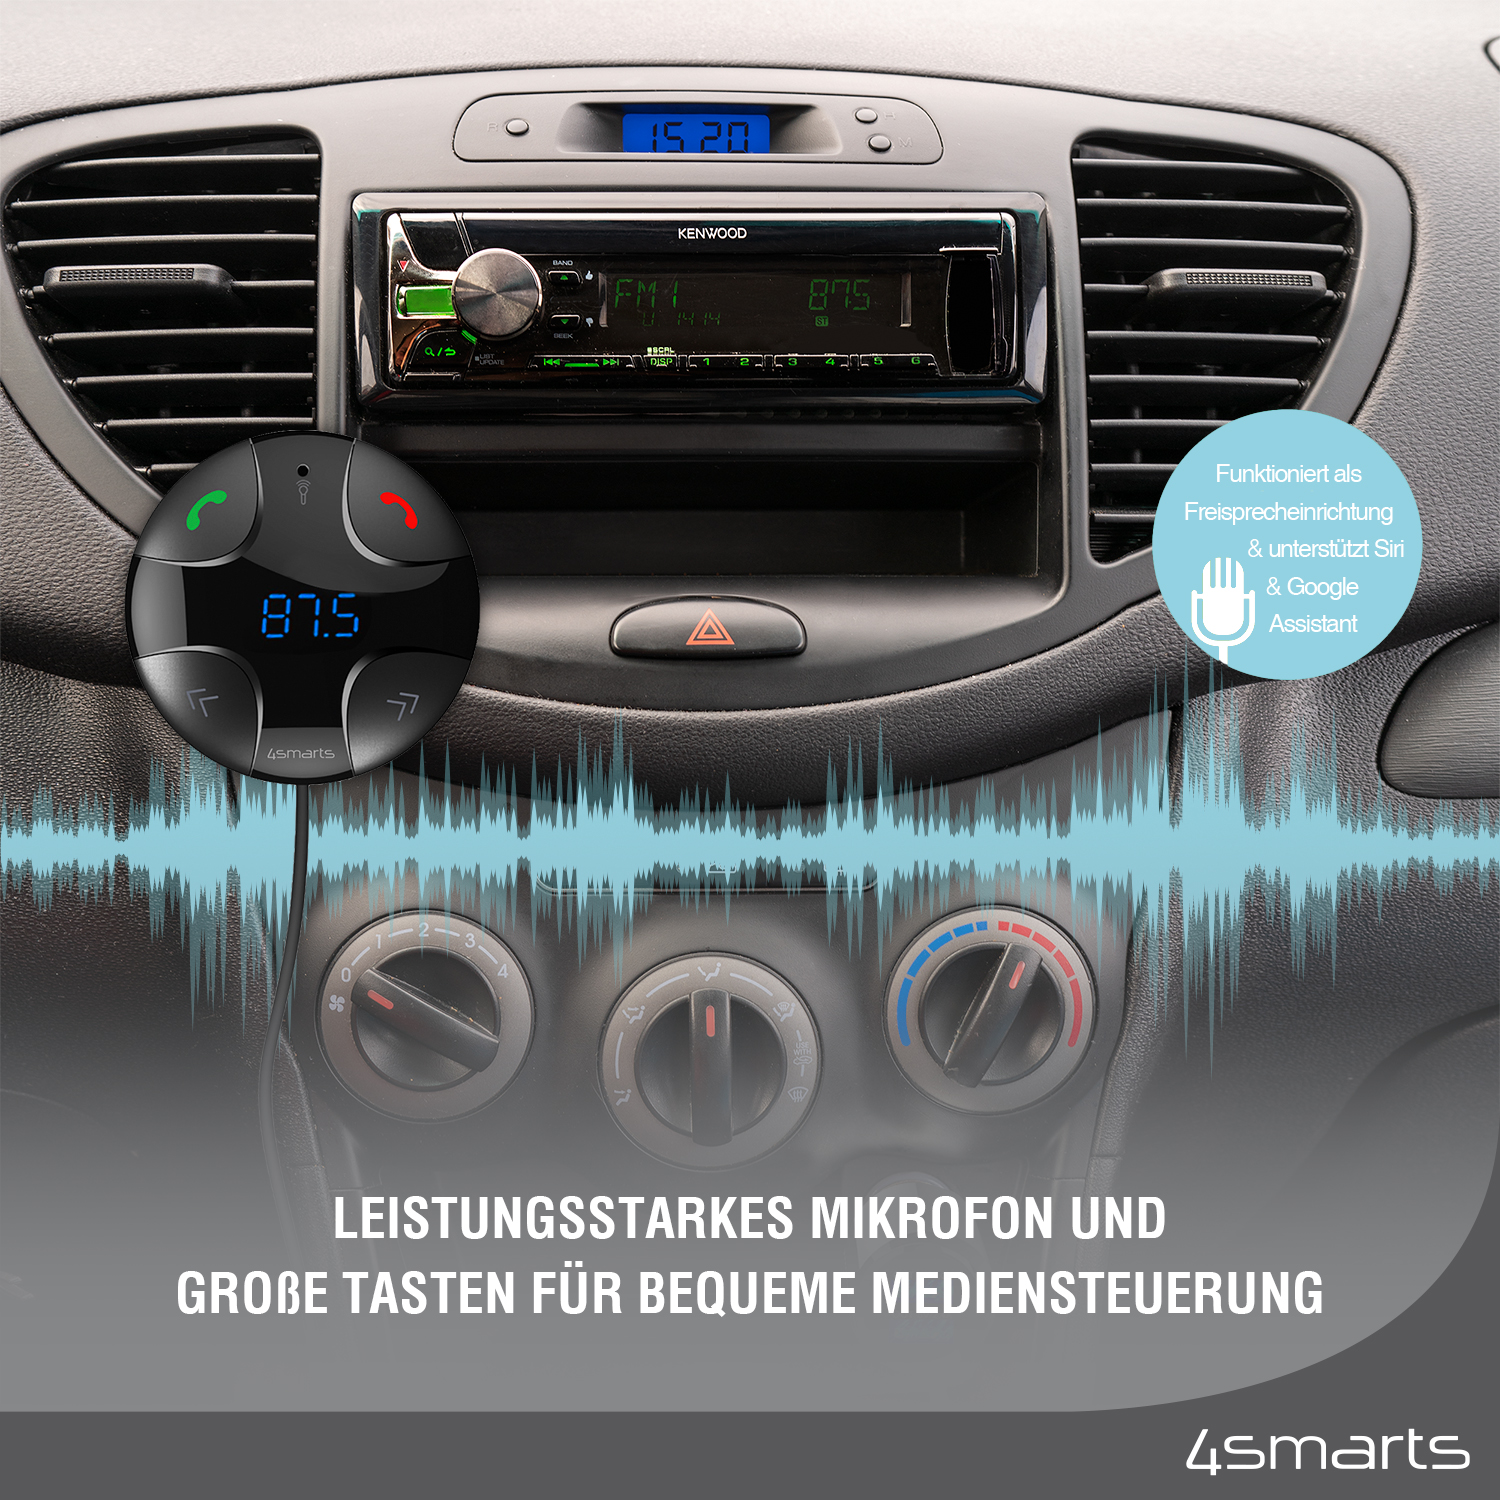 Der 4smarts Bluetooth FM Transmitter DashRemote mit Multimedia-In, Freisprechfunktion und Kfz-Ladegerät verfügt über ein leistungsstarkes Mikrofon und große Tasten zur komfortablen Mediensteuerung.